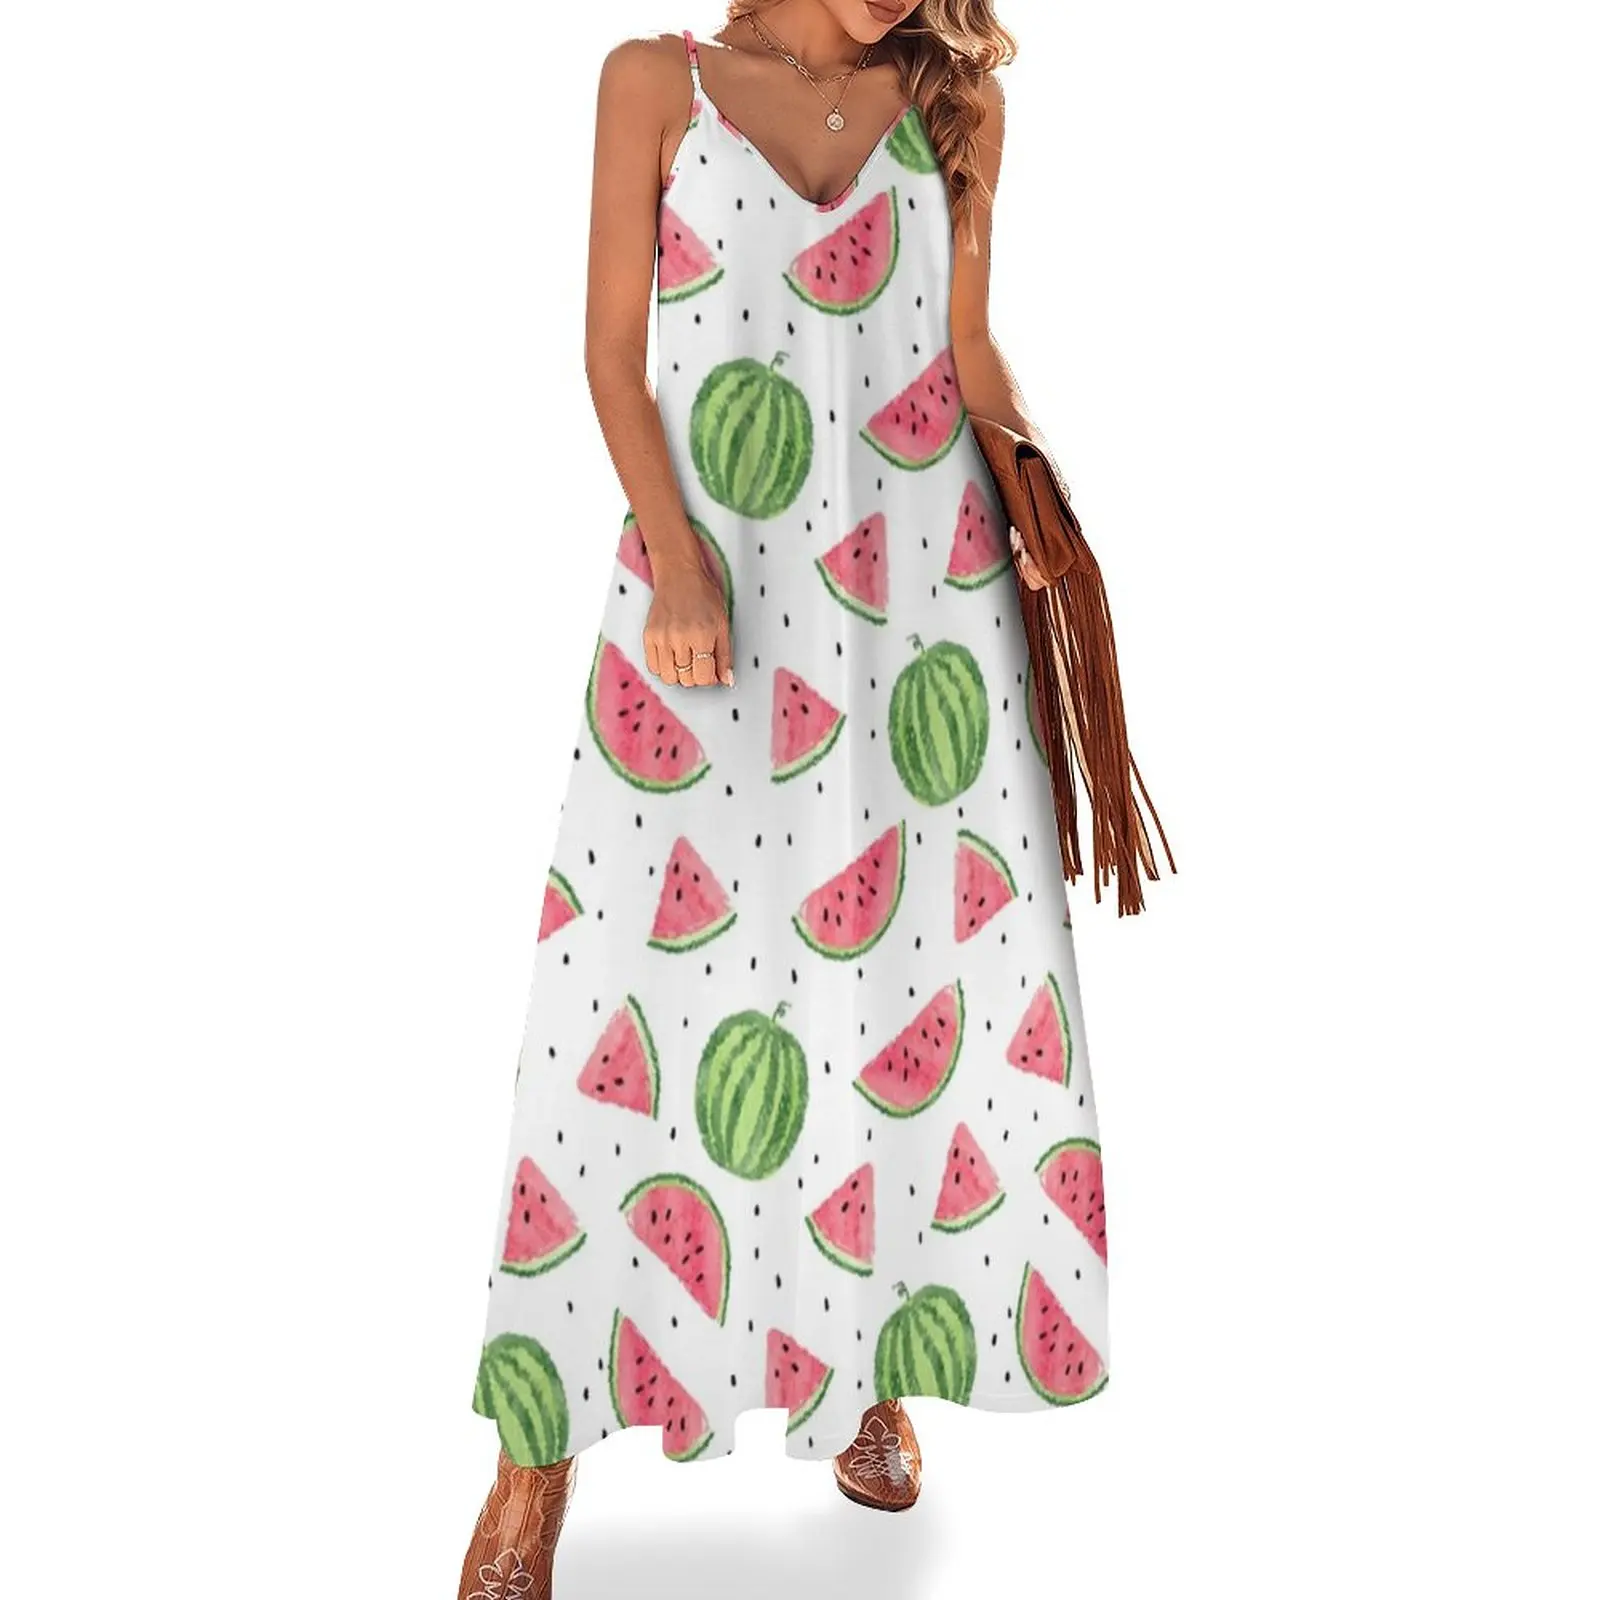 

All-Over Watermelon Print Sleeveless Dress Women's clothing dress summer birthday dress beach dress